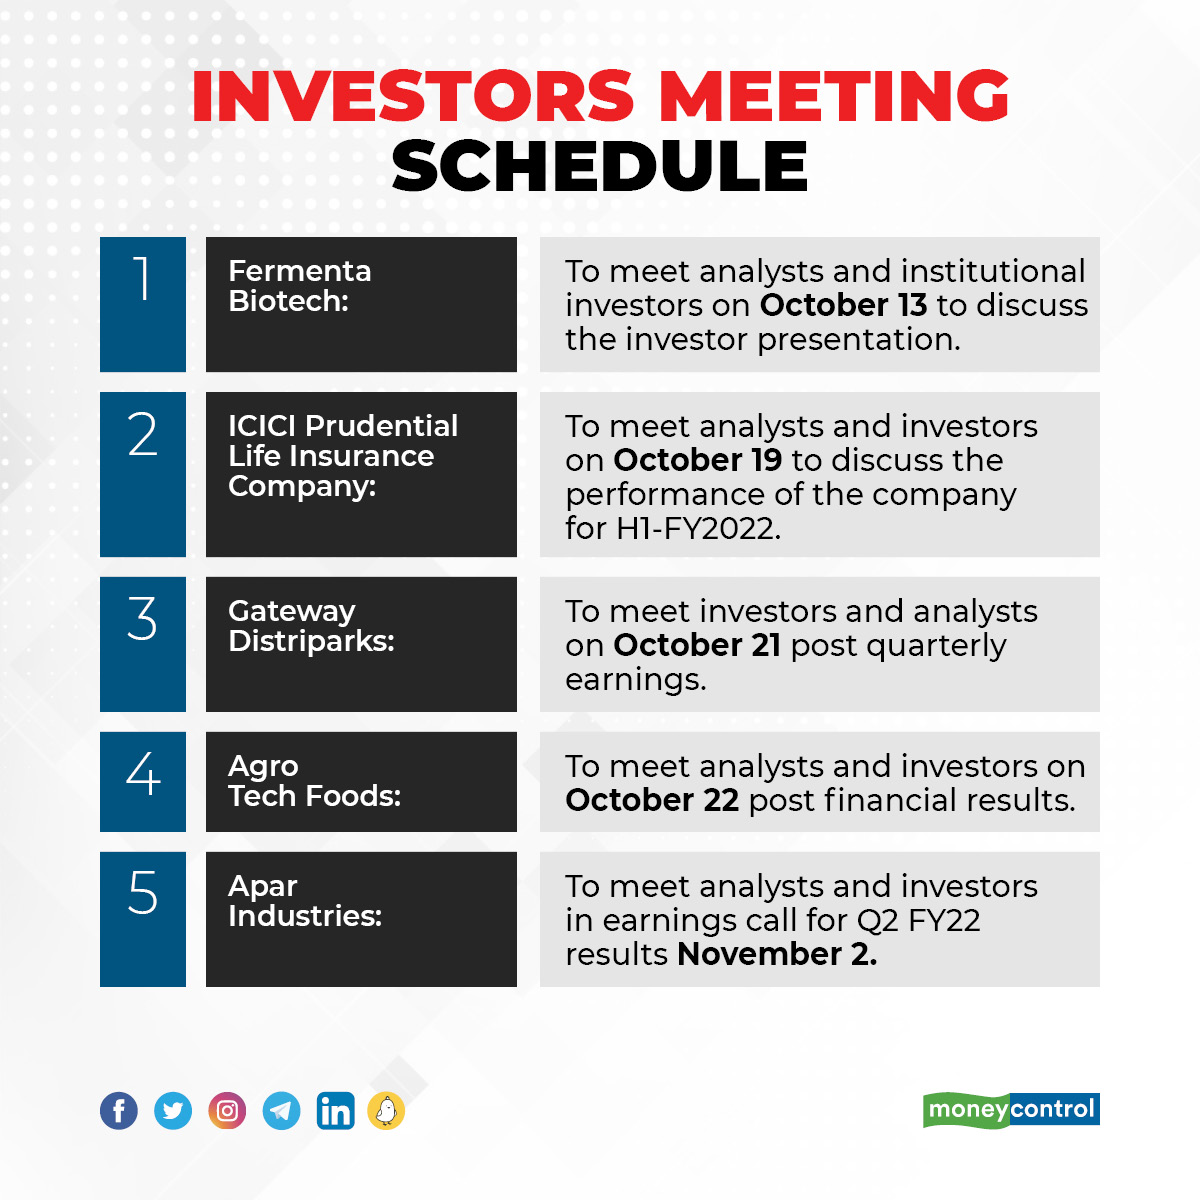 Investors Meeting Schedule: